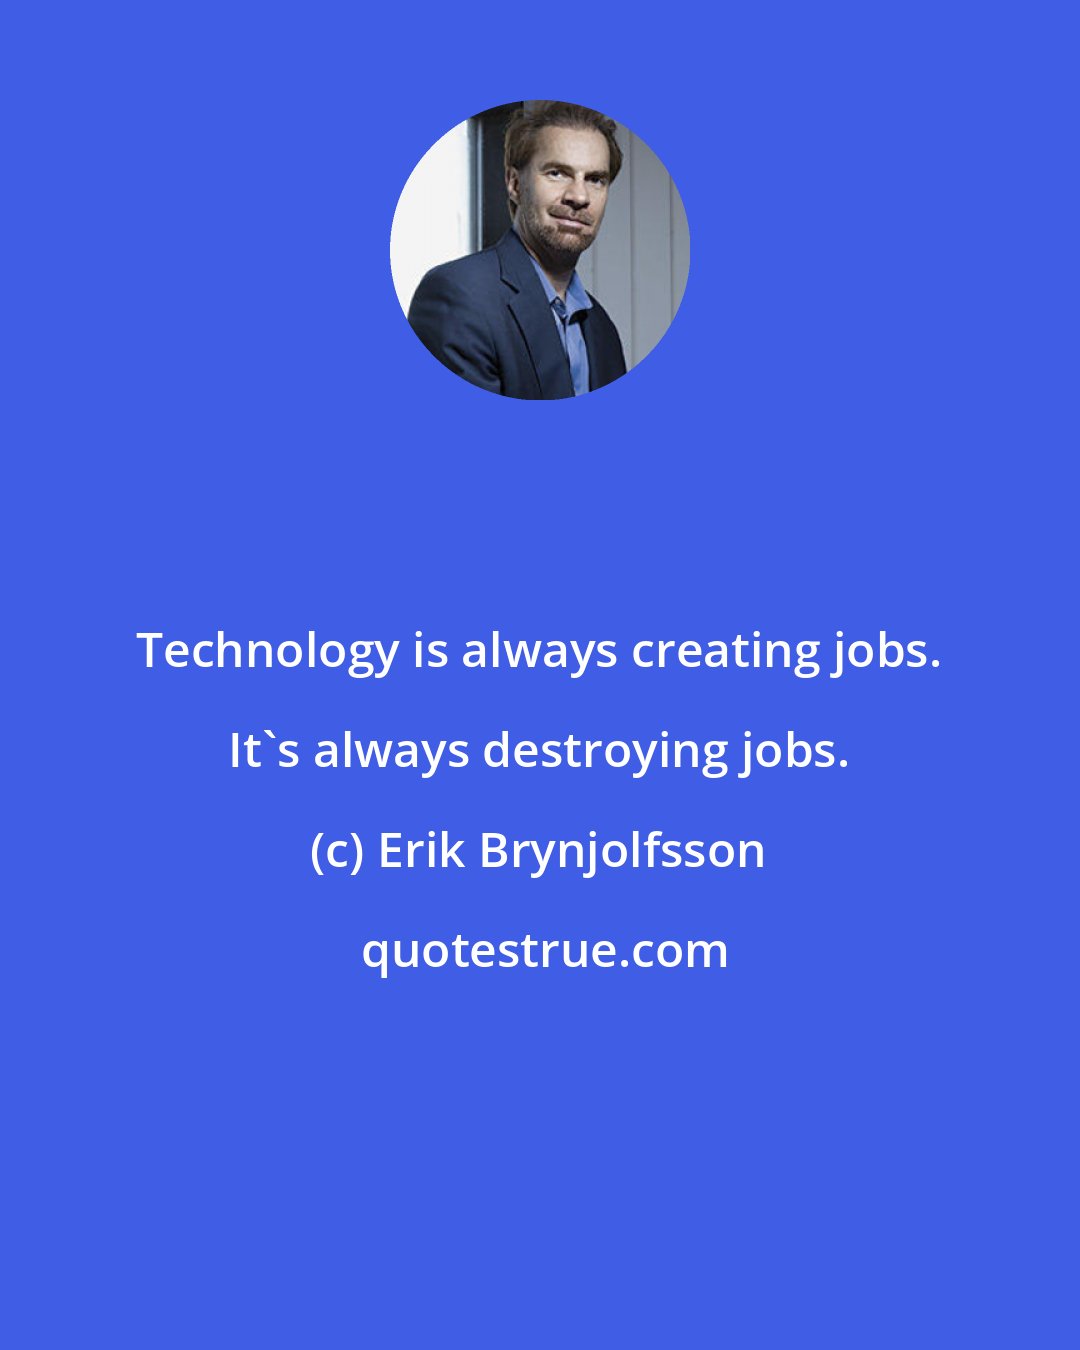 Erik Brynjolfsson: Technology is always creating jobs. It's always destroying jobs.